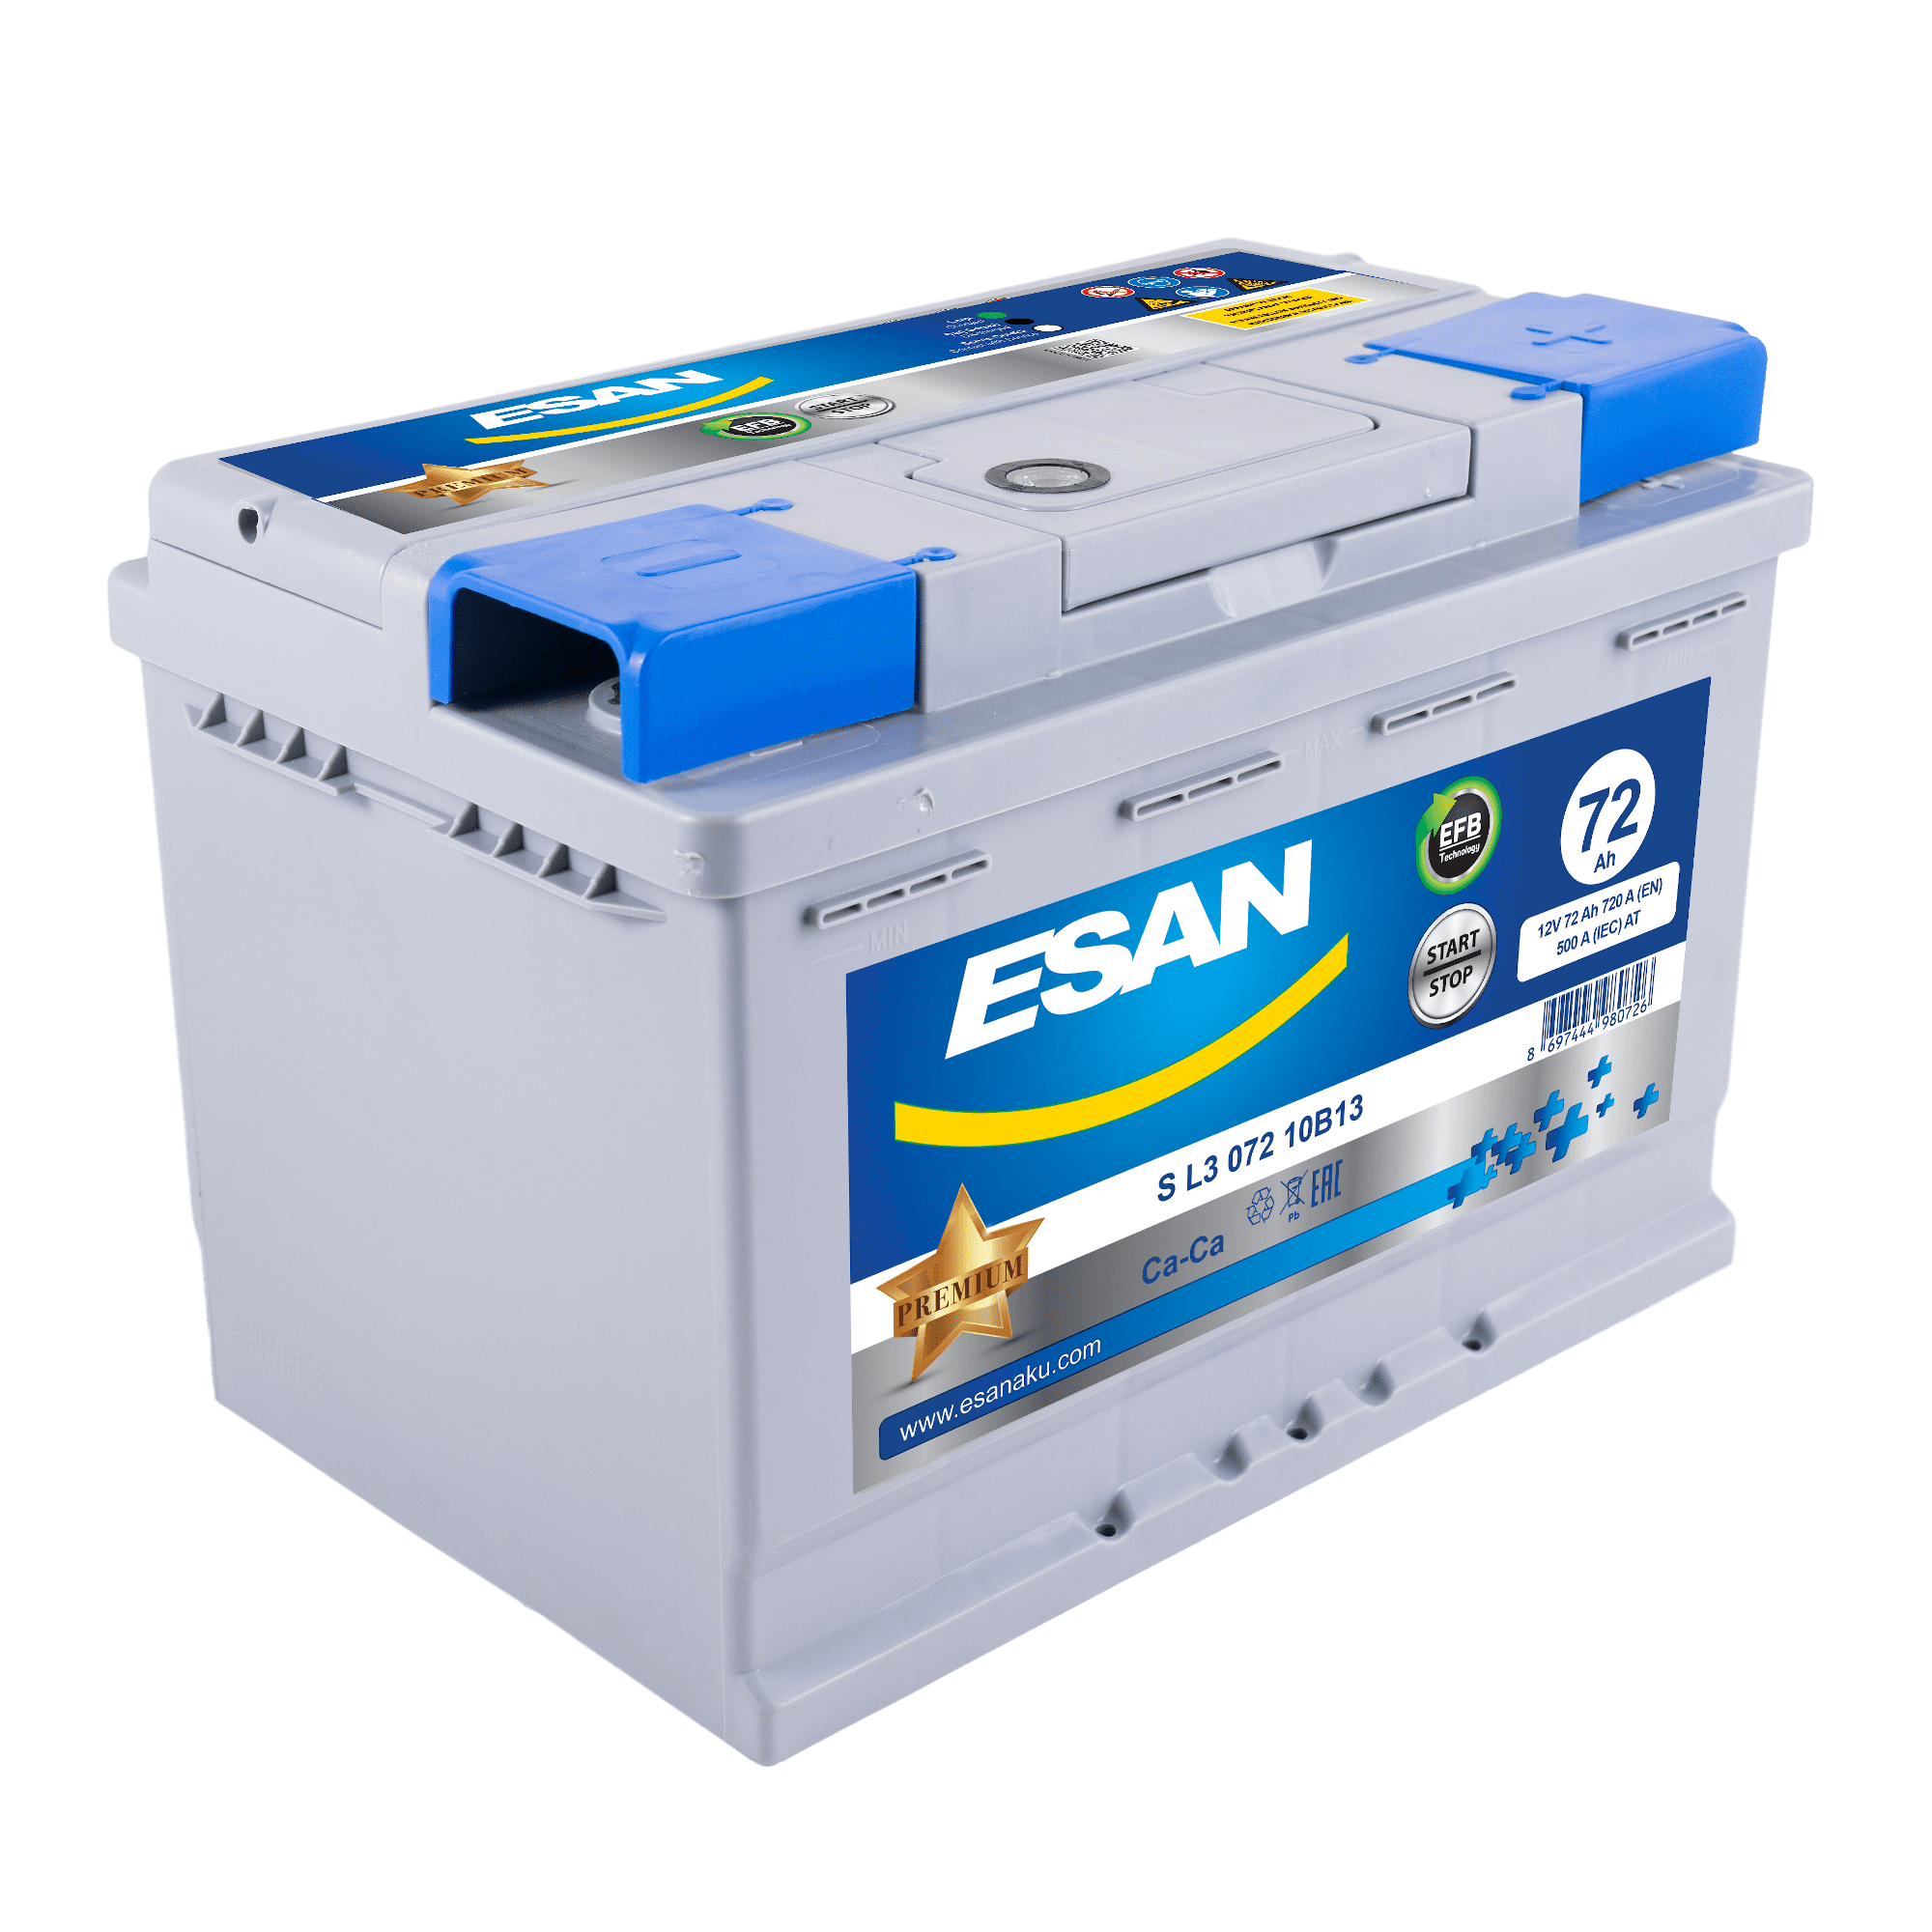 Автомобильная аккумуляторная батарея ESAN EFB Start-Stop S L3 072 10B13, 72 Ач, L3 DIN EFB, 0/1